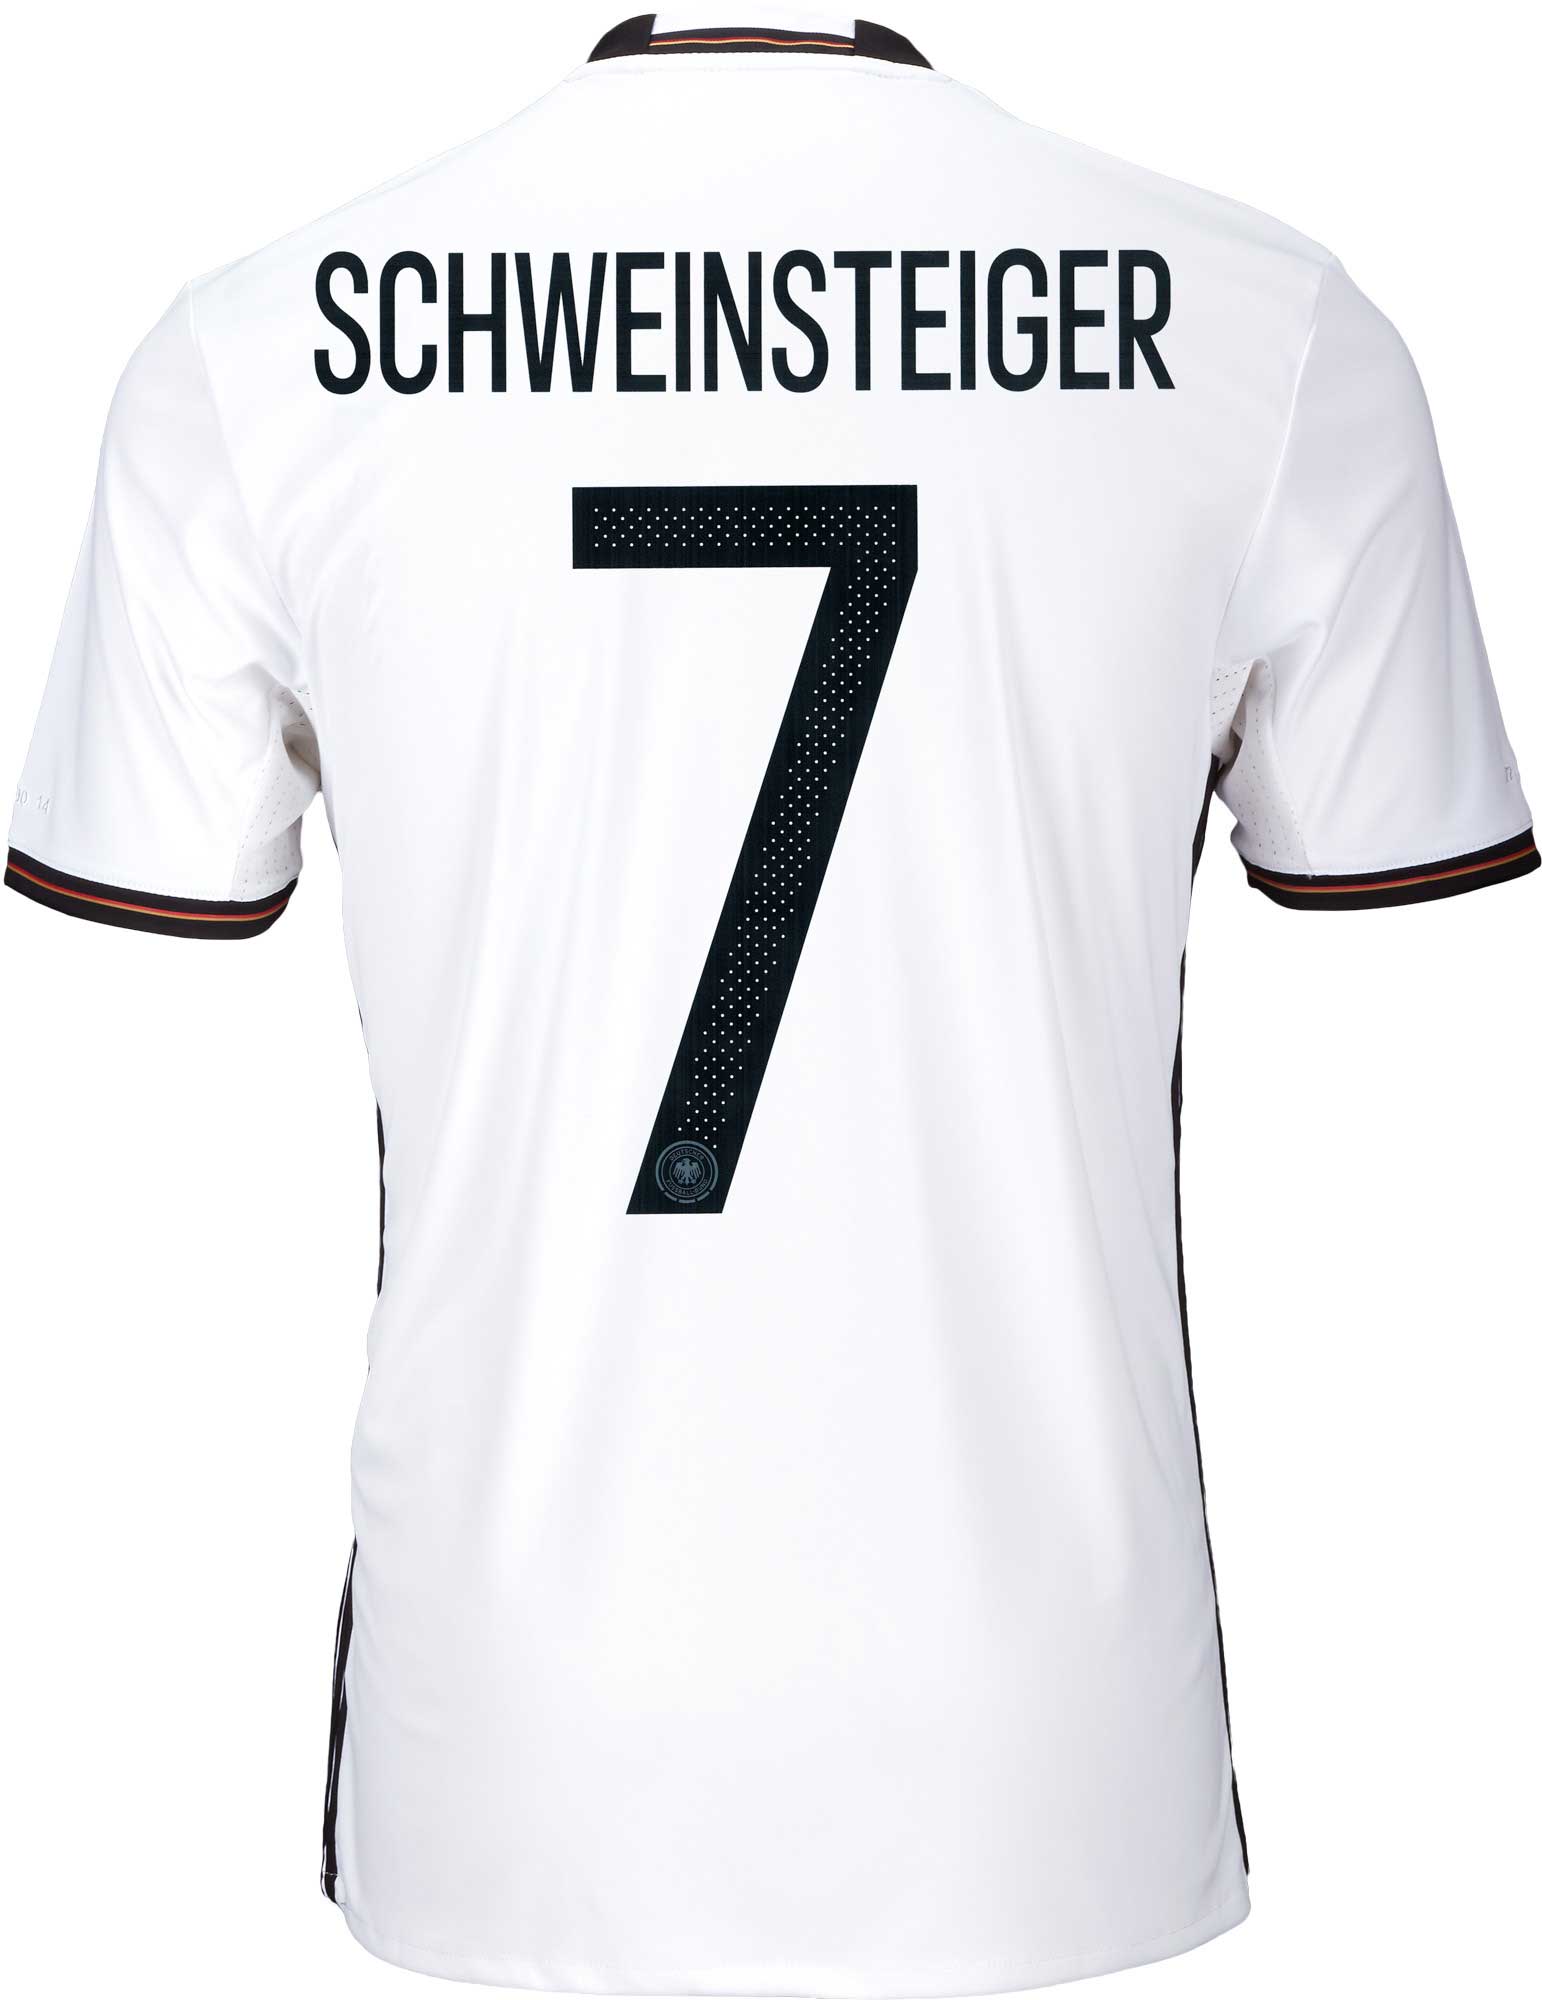 schweinsteiger jersey number